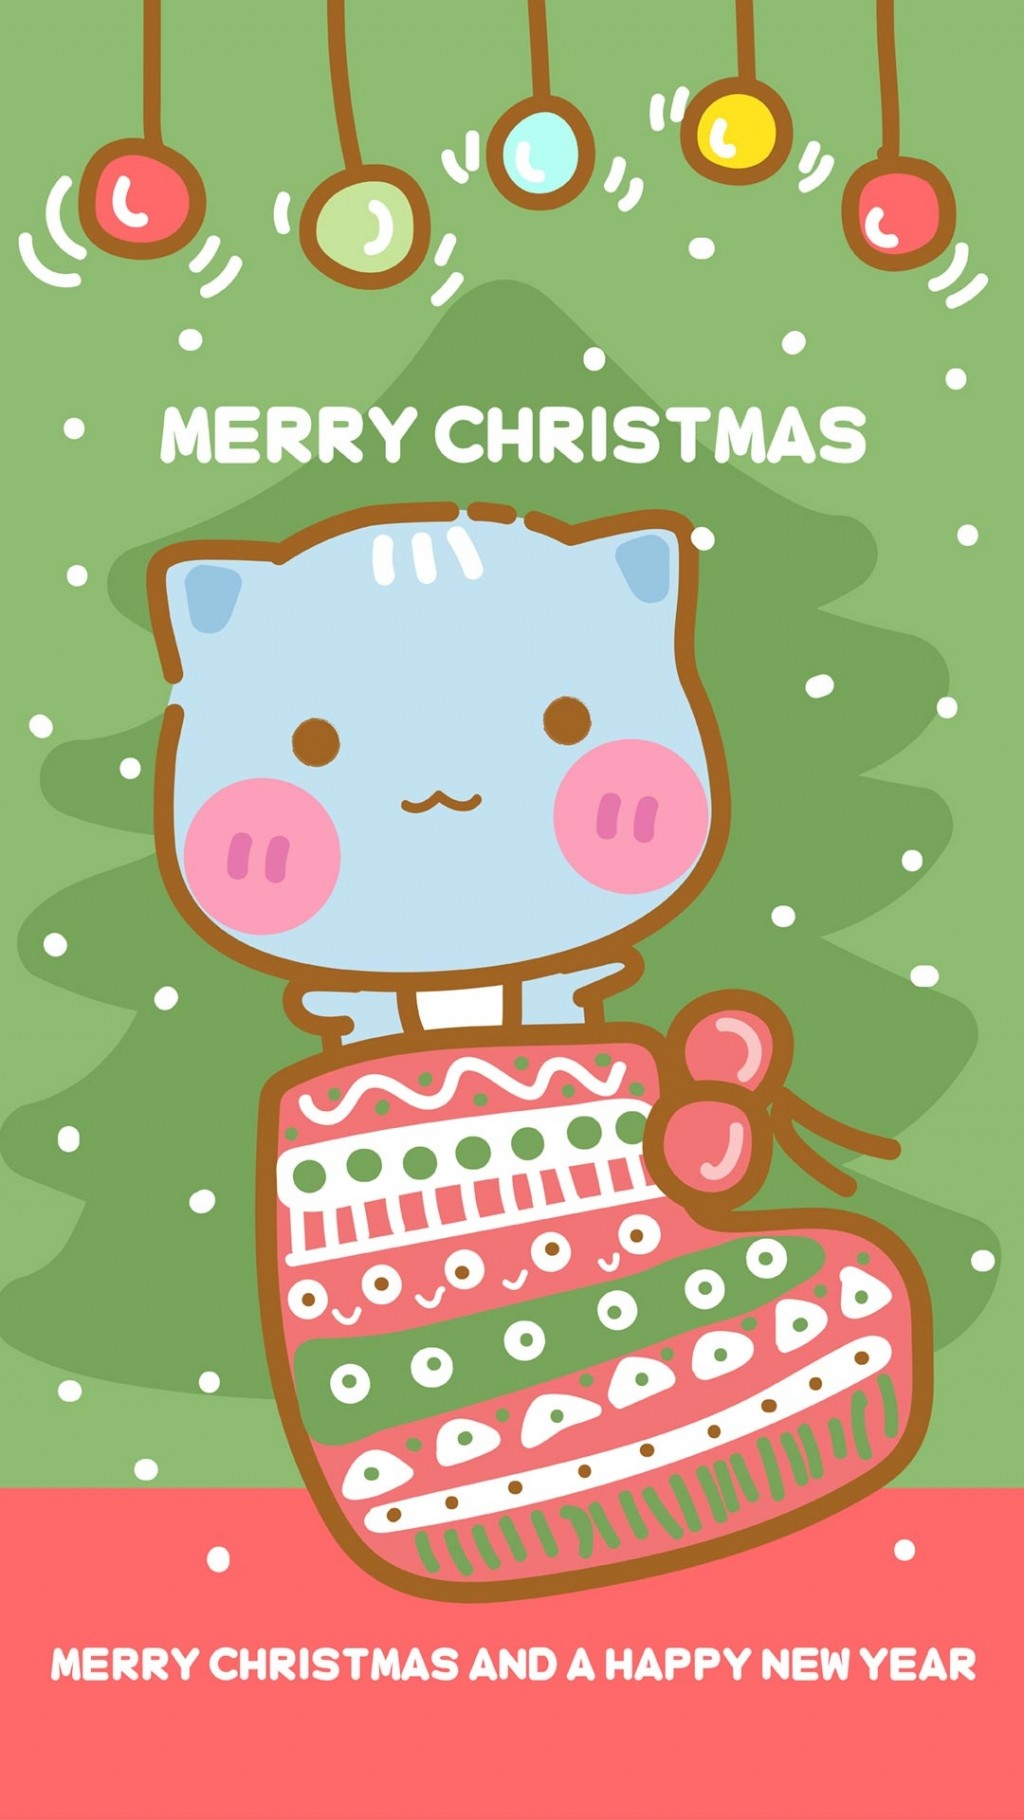 哈咪猫圣诞节可爱高清手机壁纸